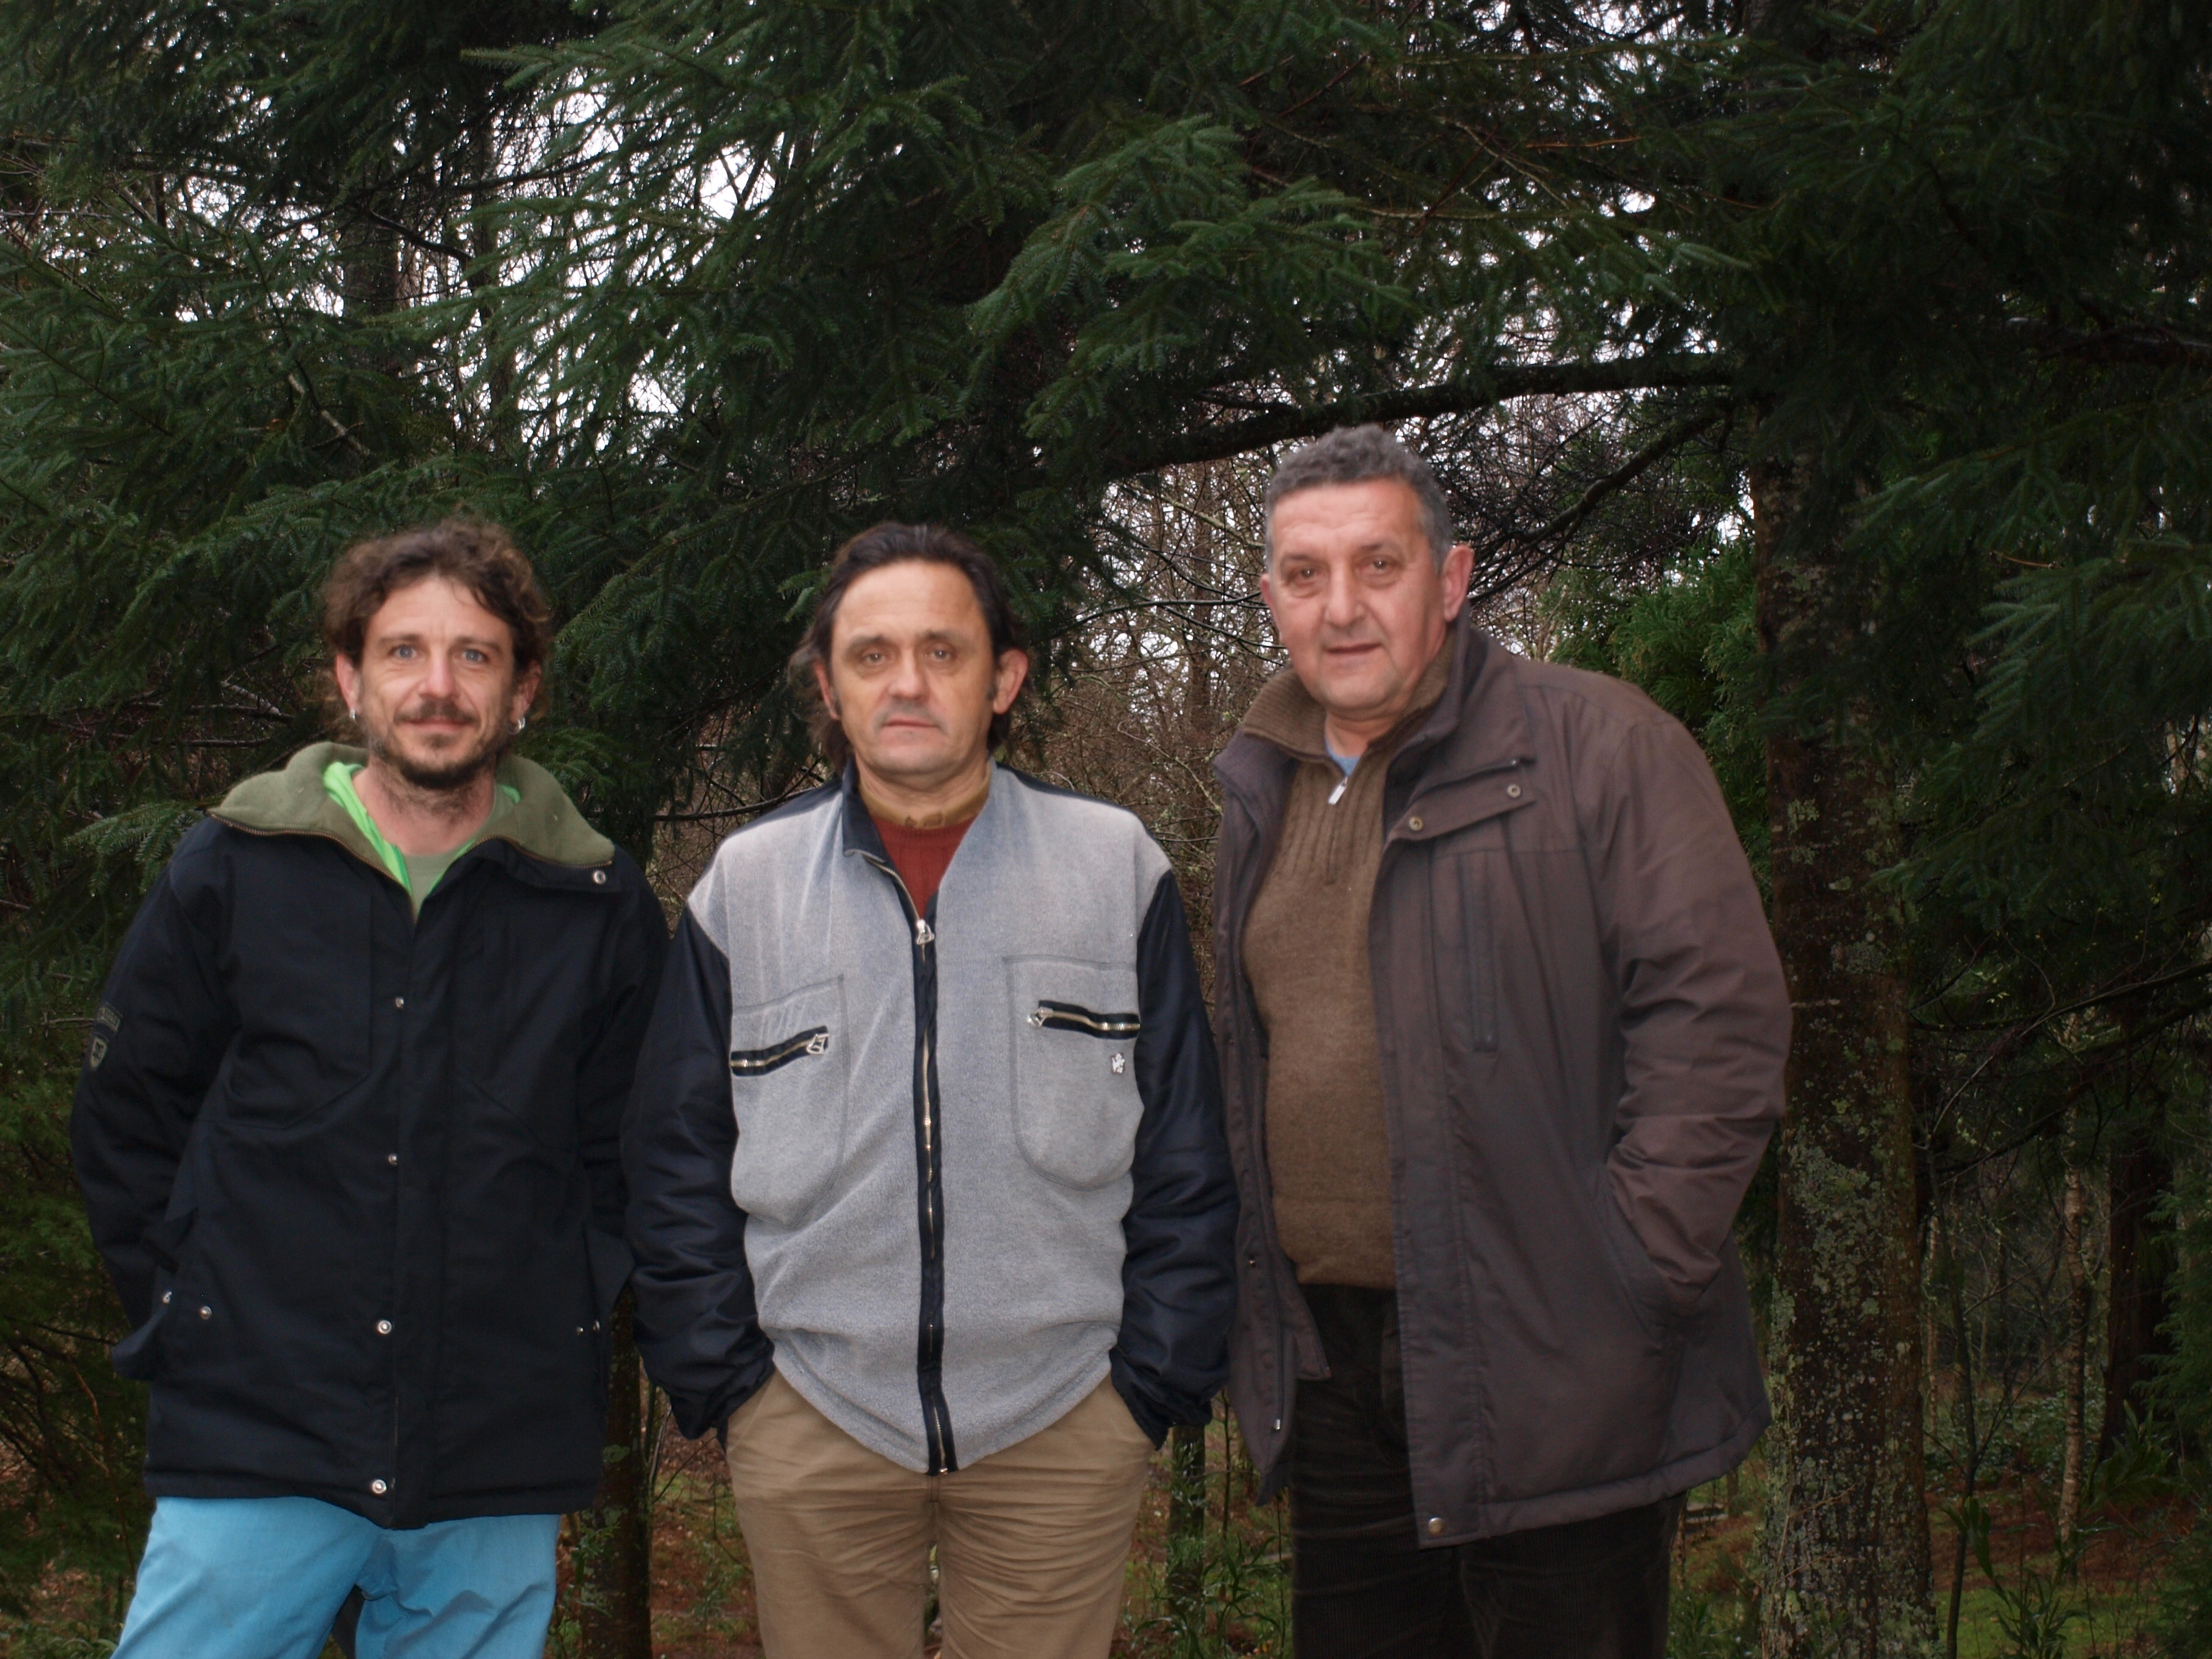 Álvaro Bueno (centro) acompañado polo Presidente da Fundación Daniel Rosales (dereita) e o Enxeñeiro Gaspar Bernárdez (esquerda) durante a súa visita o Lago de Castiñeiras.